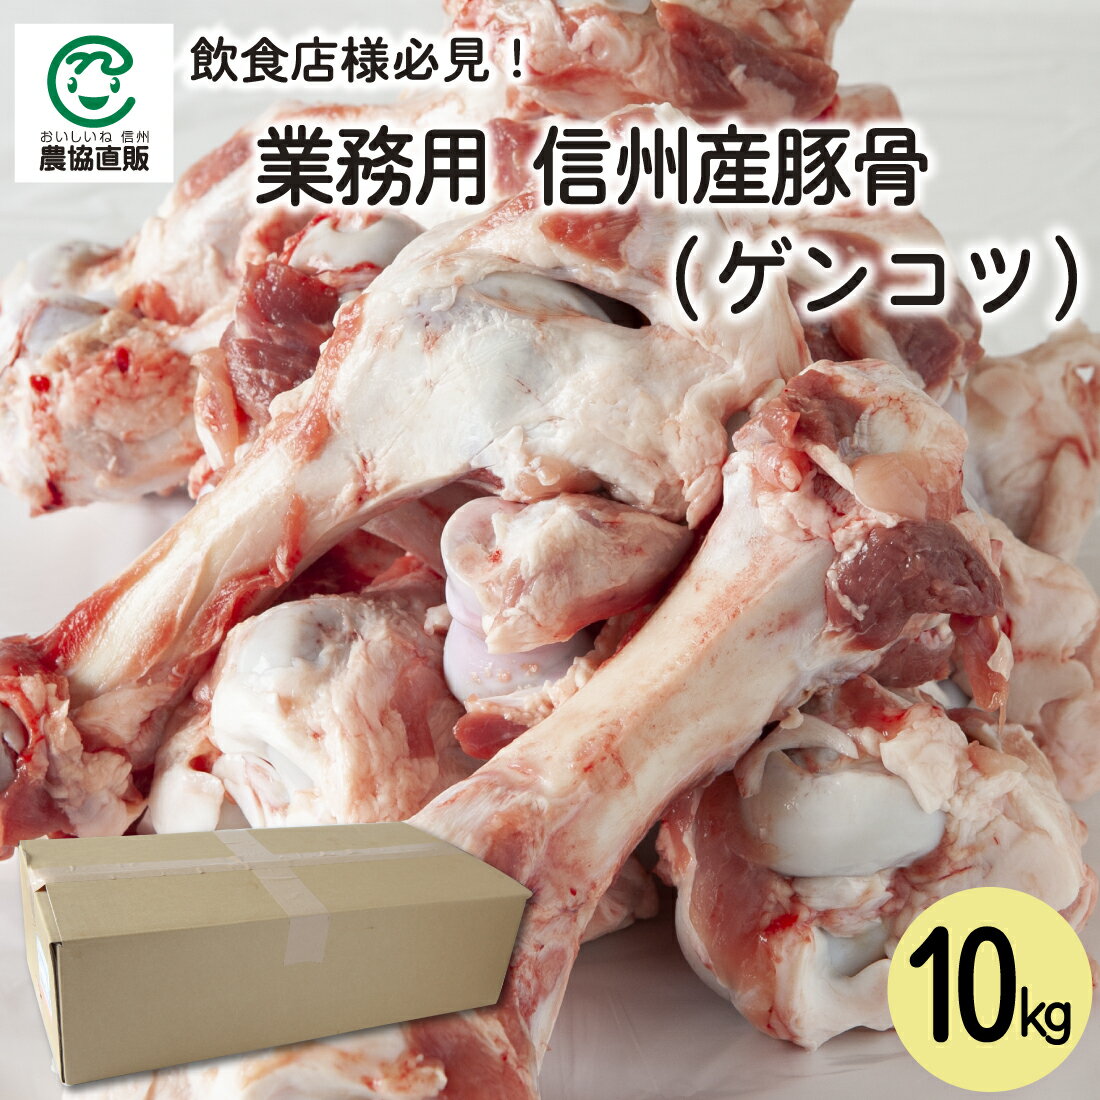 【業務用】信州産豚骨(ゲンコツ) 10k